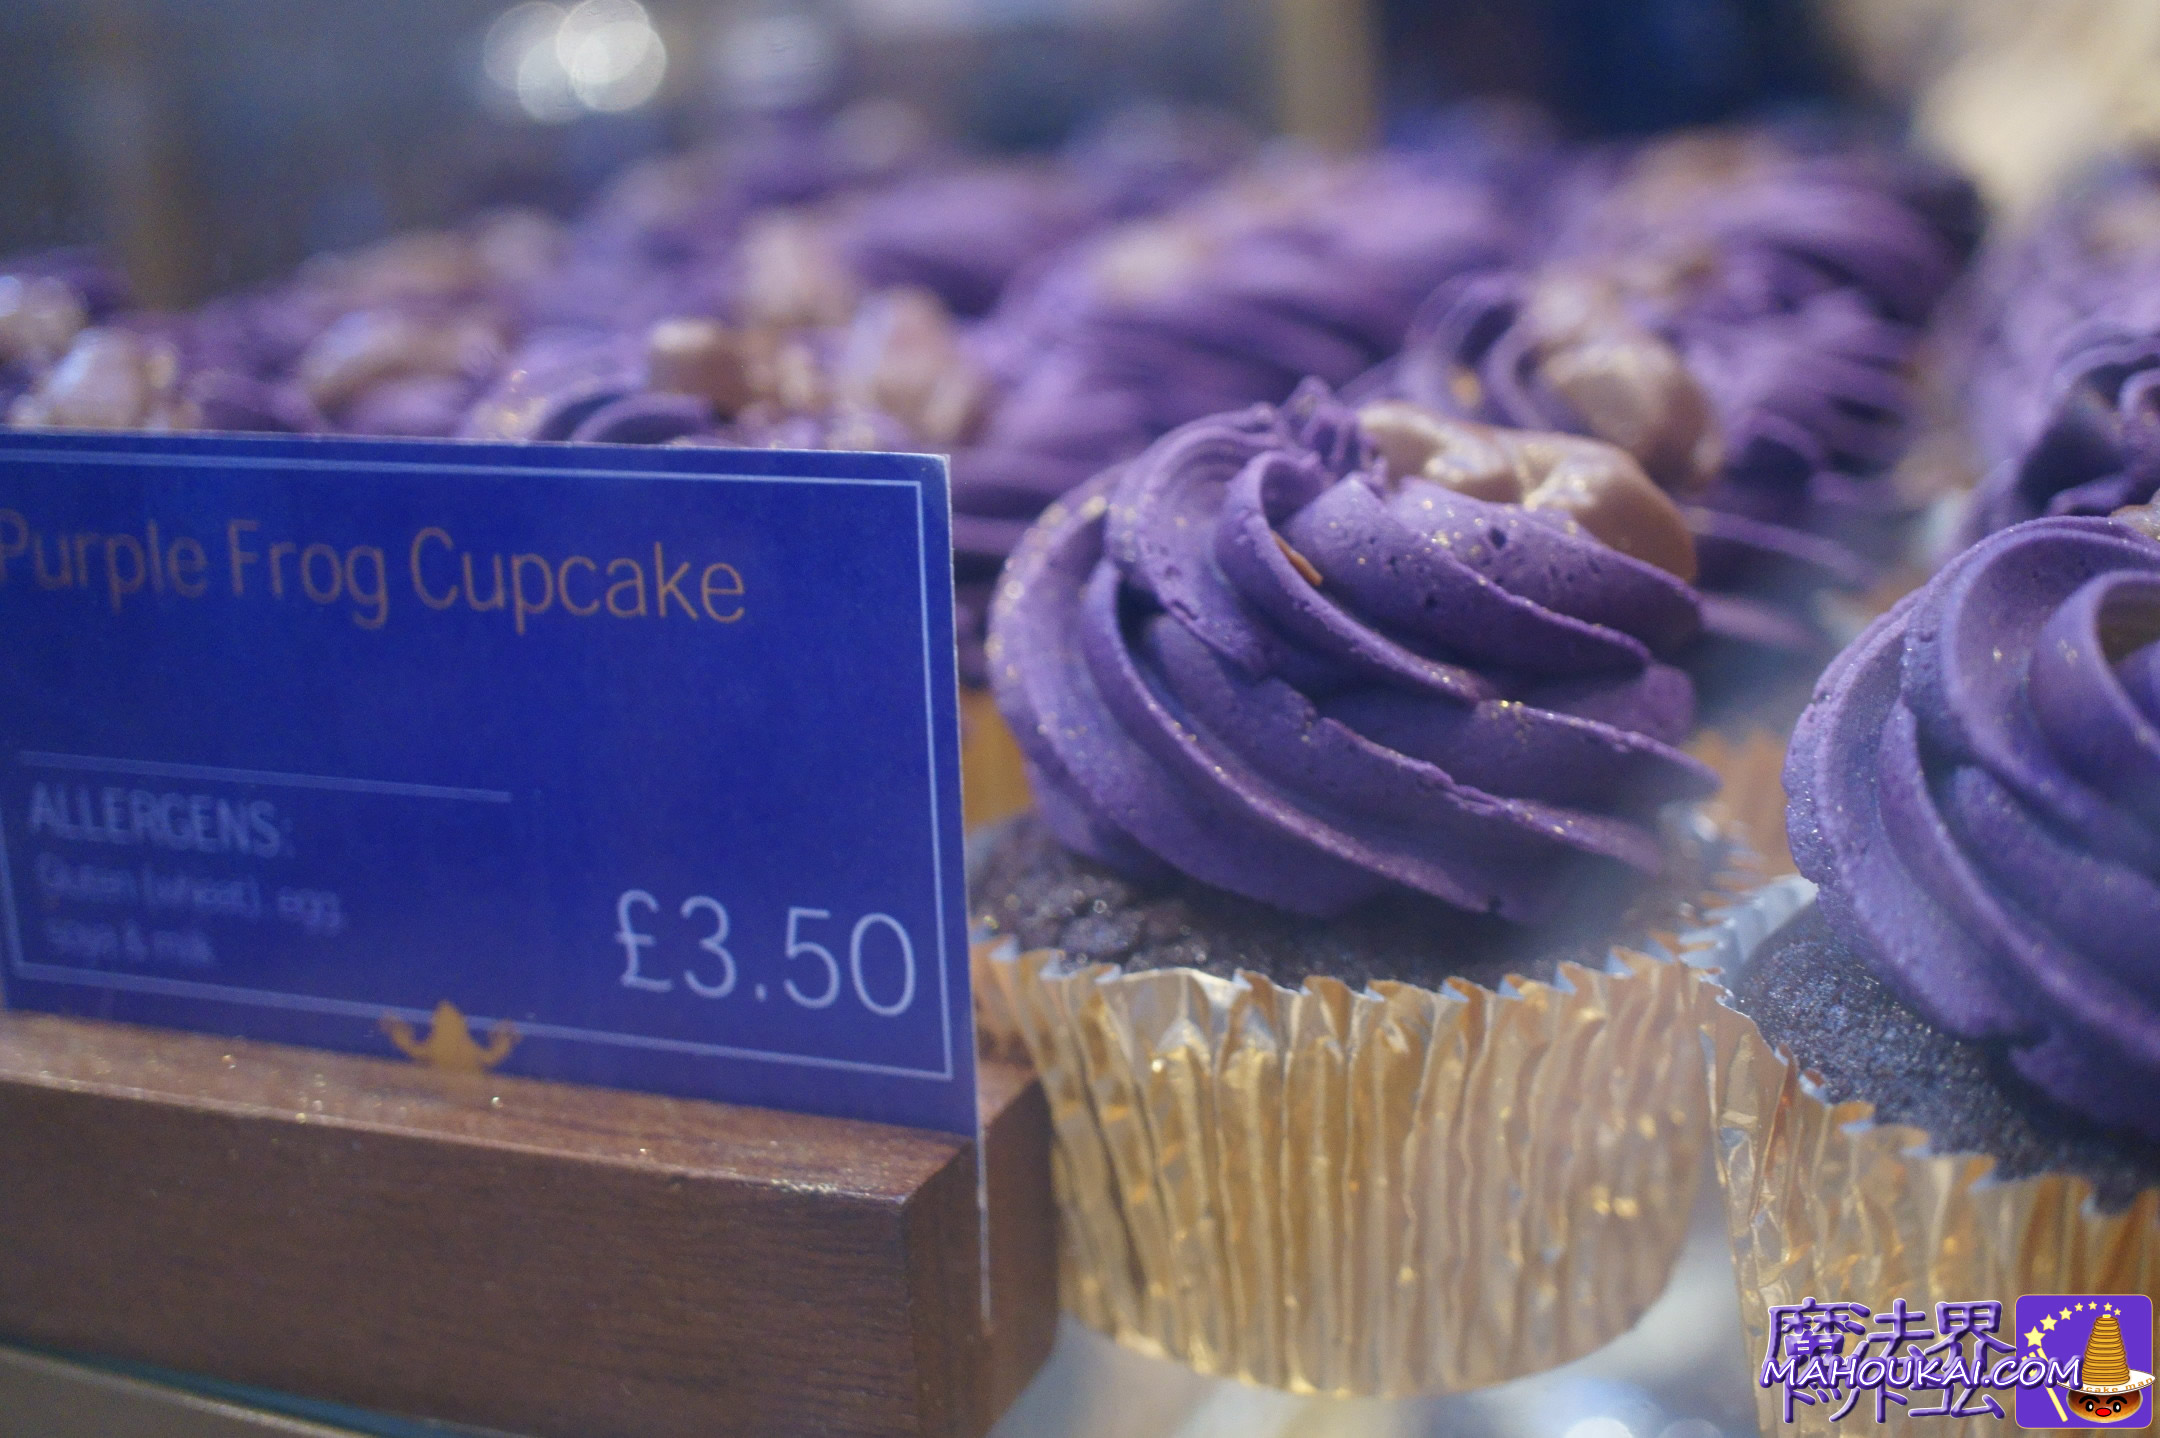 Purple Frog Cupcake（パープル　カエル　カップケーキ）3.50£ THE CHOCOLATE FROG CAFE＜チョコレート カエル カフェ＞ 蛙チョコ カフェ ハリー・ポッター スタジオ ツアー ロンドン